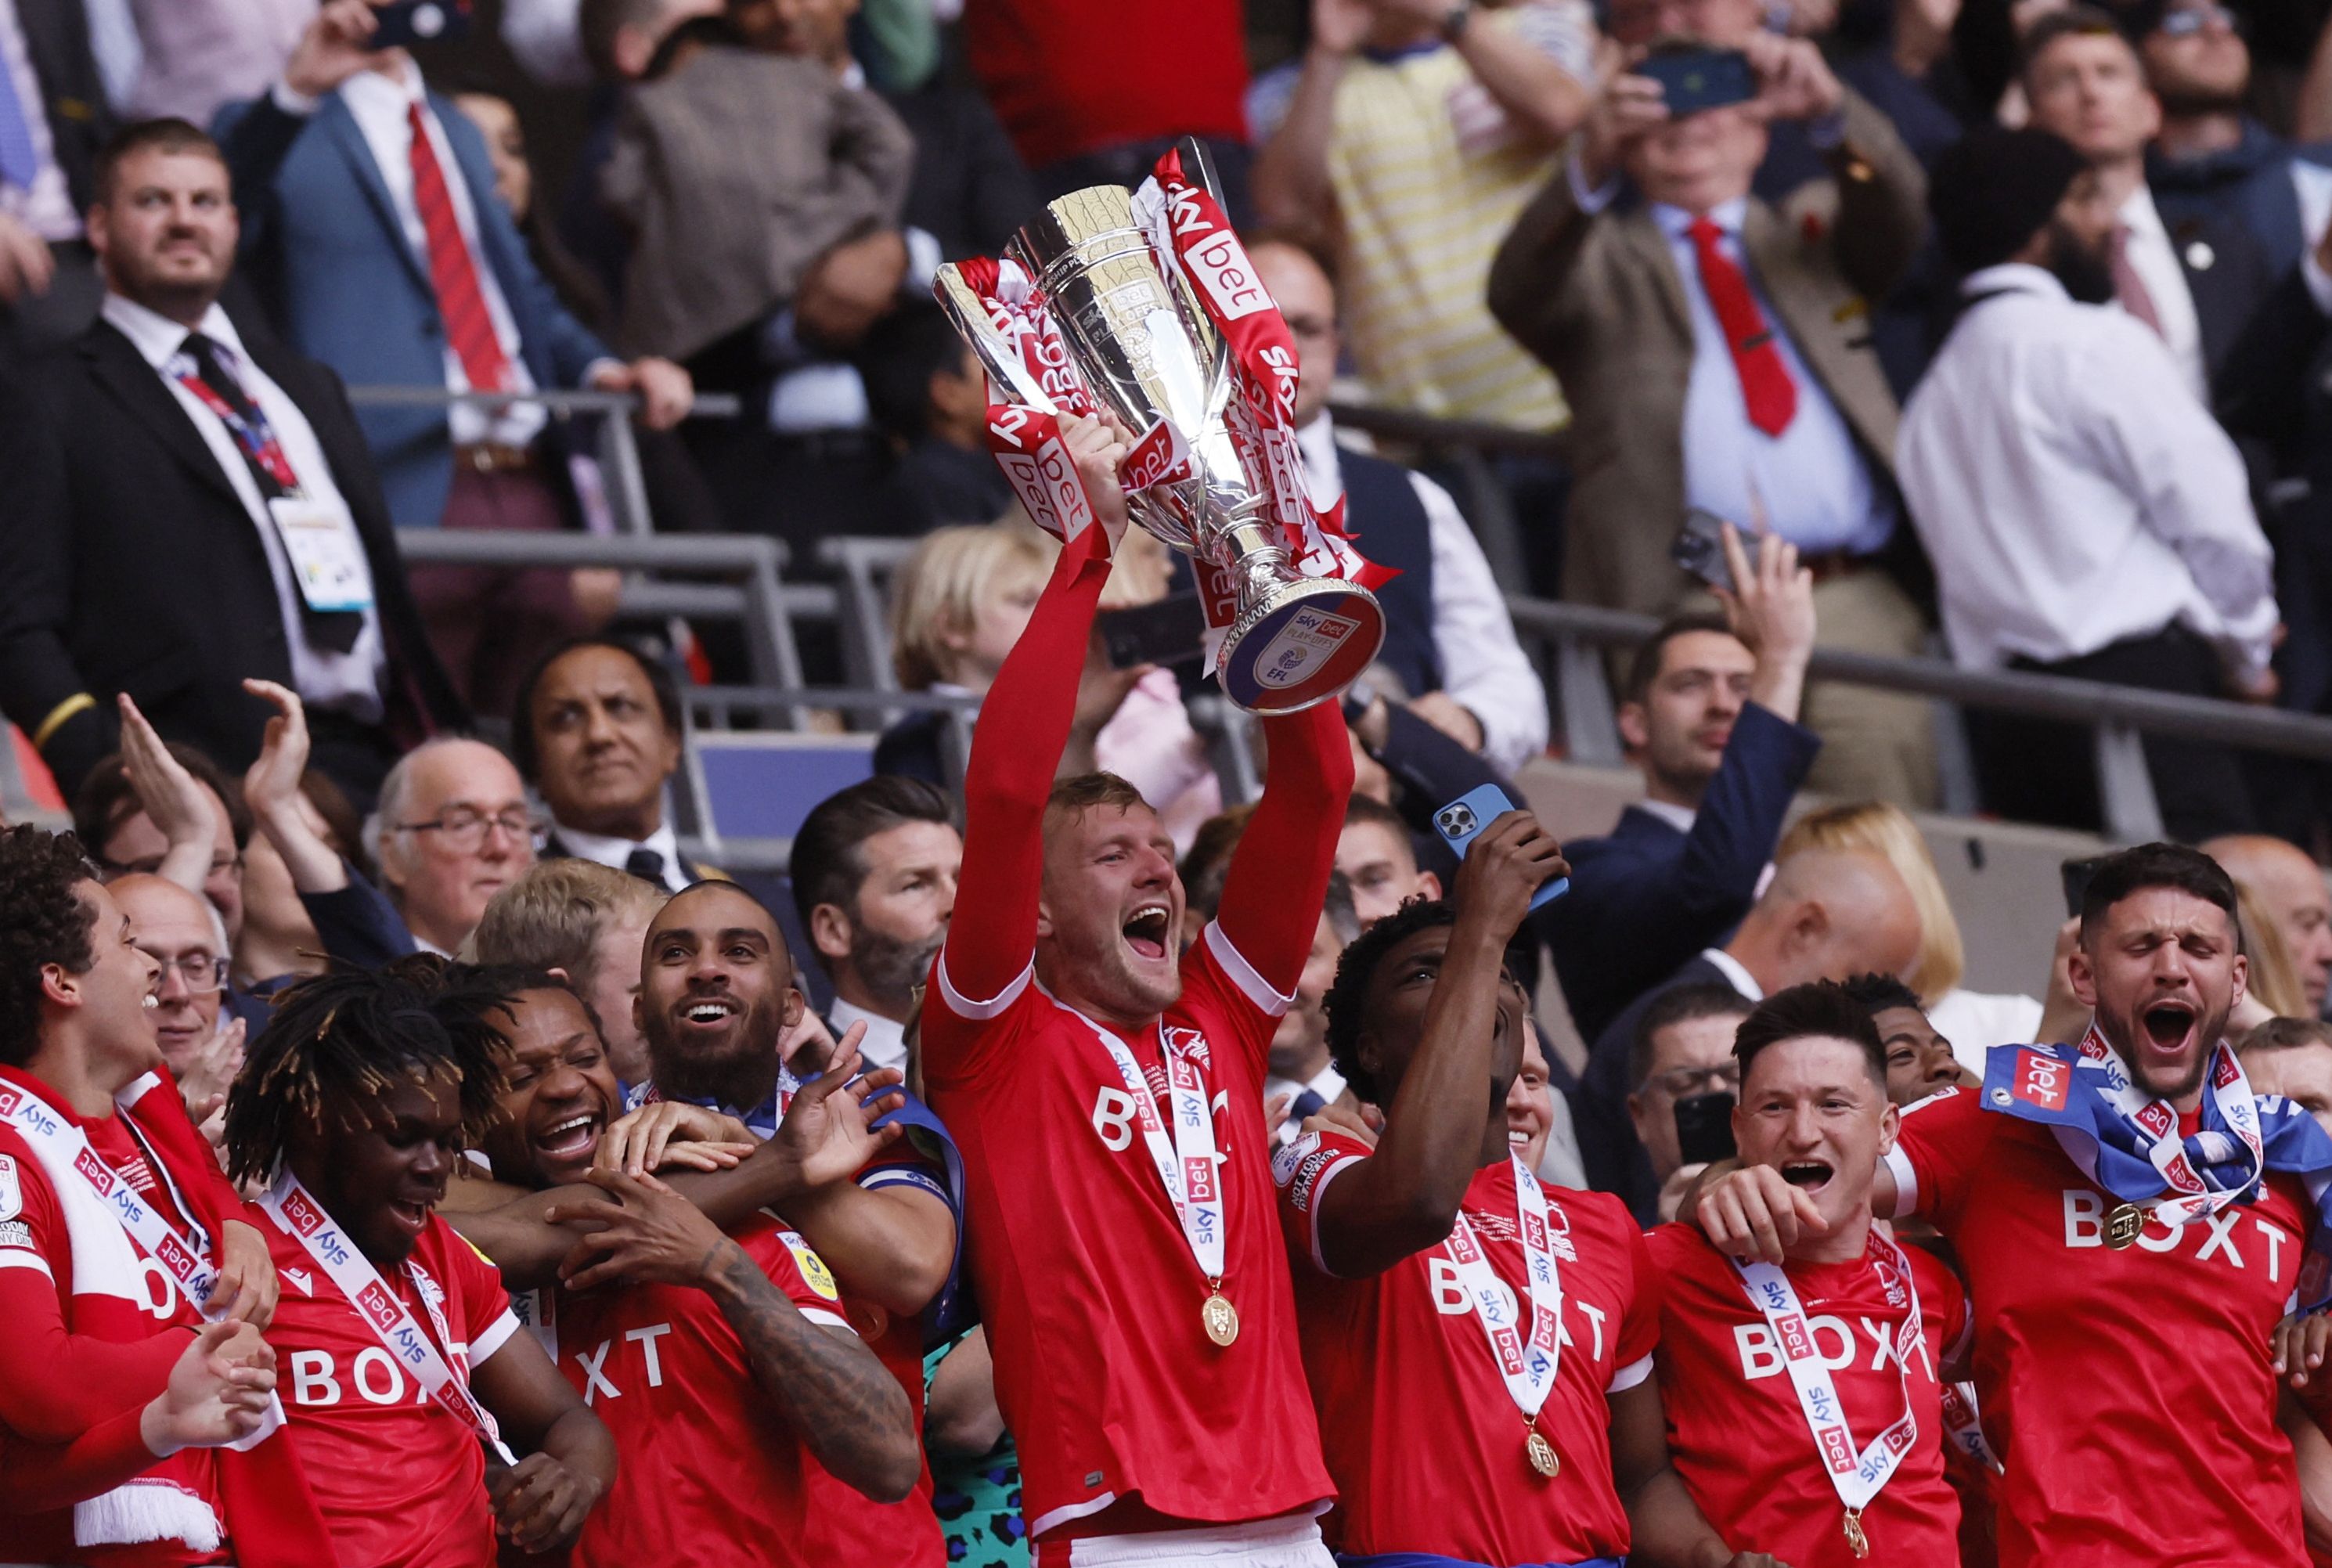 Nottingham Forest vence playoff e volta à Premier League após 23